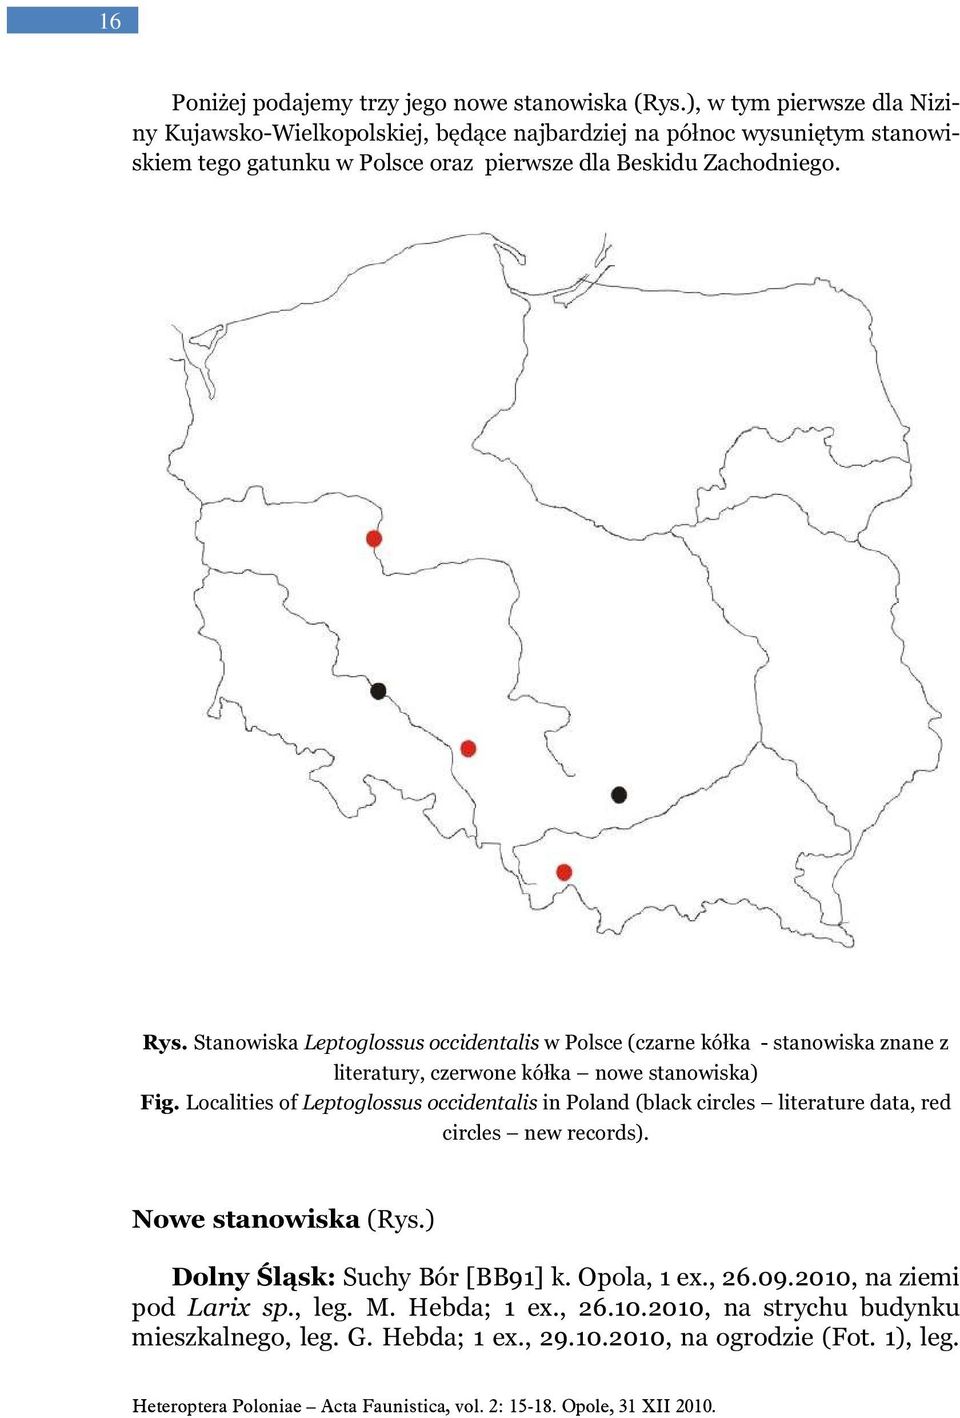 Stanowiska Leptoglossus occidentalis w Polsce (czarne kółka - stanowiska znane z literatury, czerwone kółka nowe stanowiska) Fig.